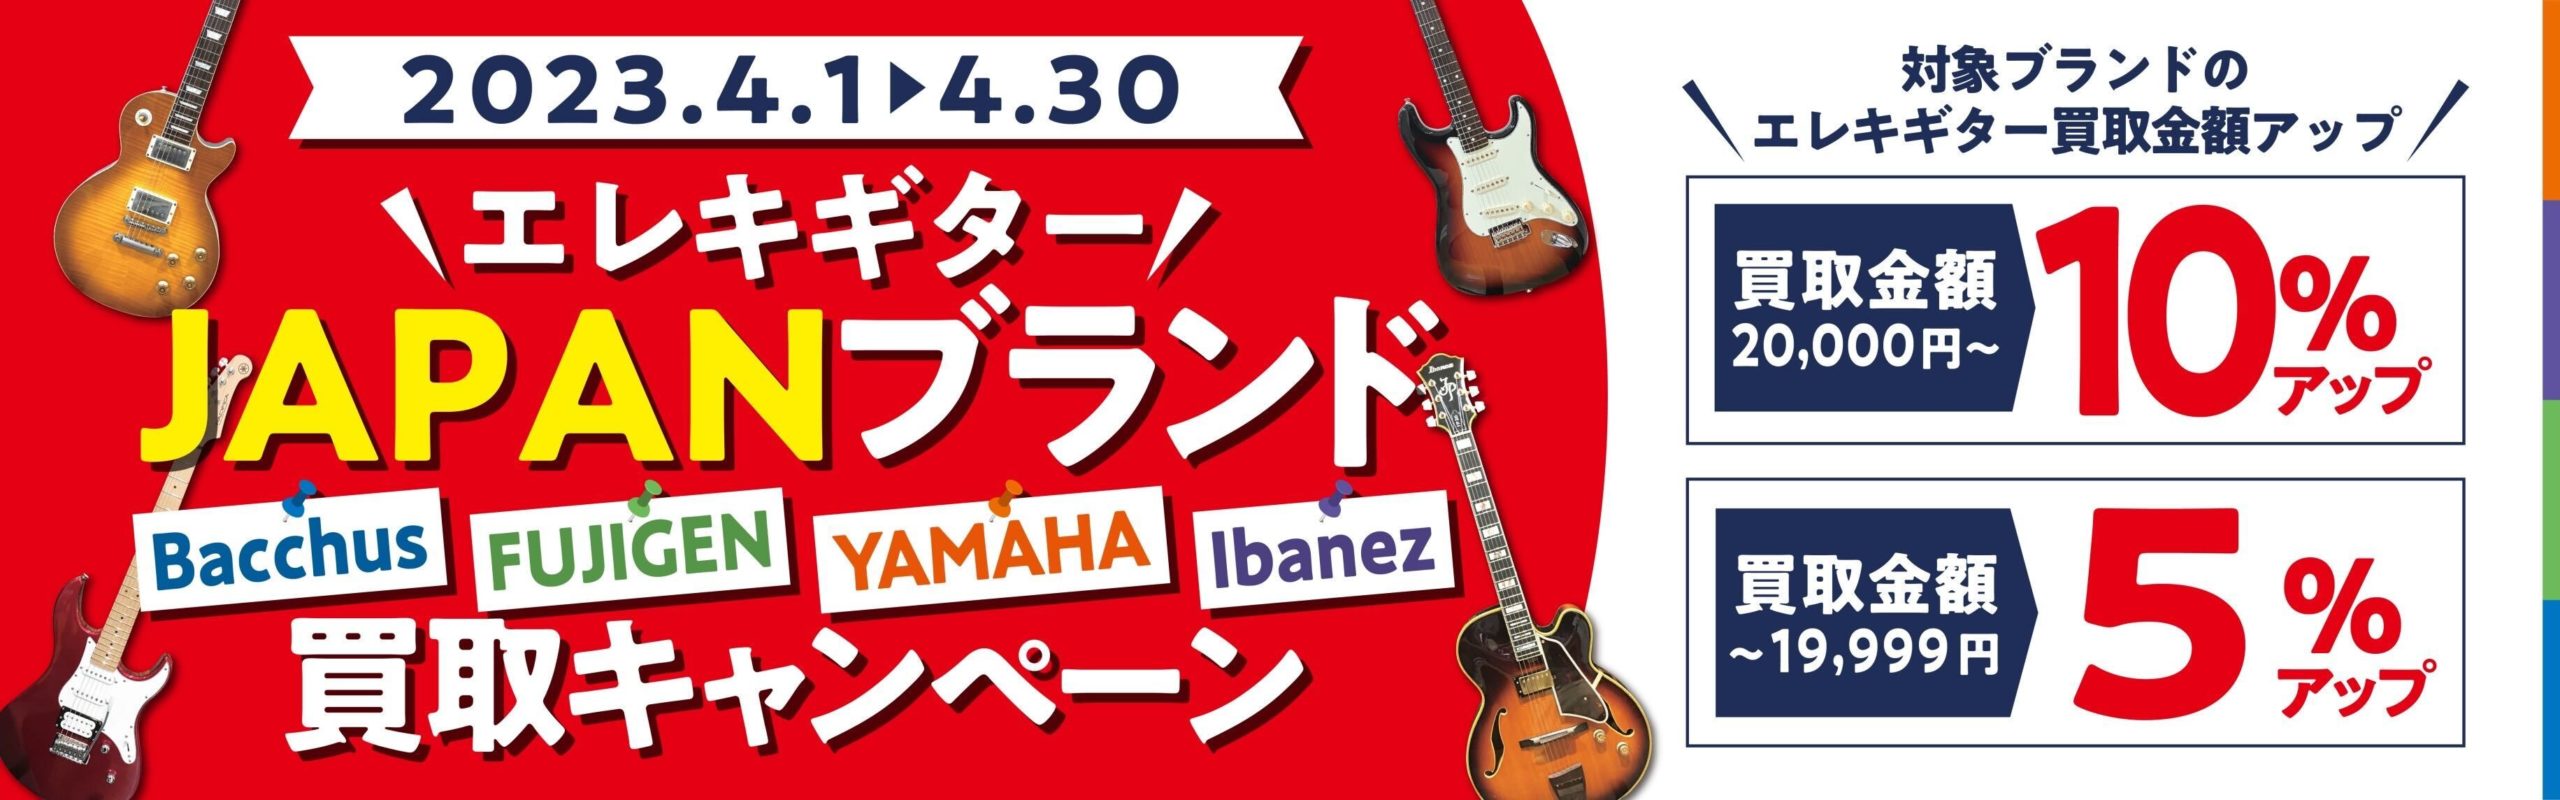 エレキギター JAPANブランド買取キャンペーン